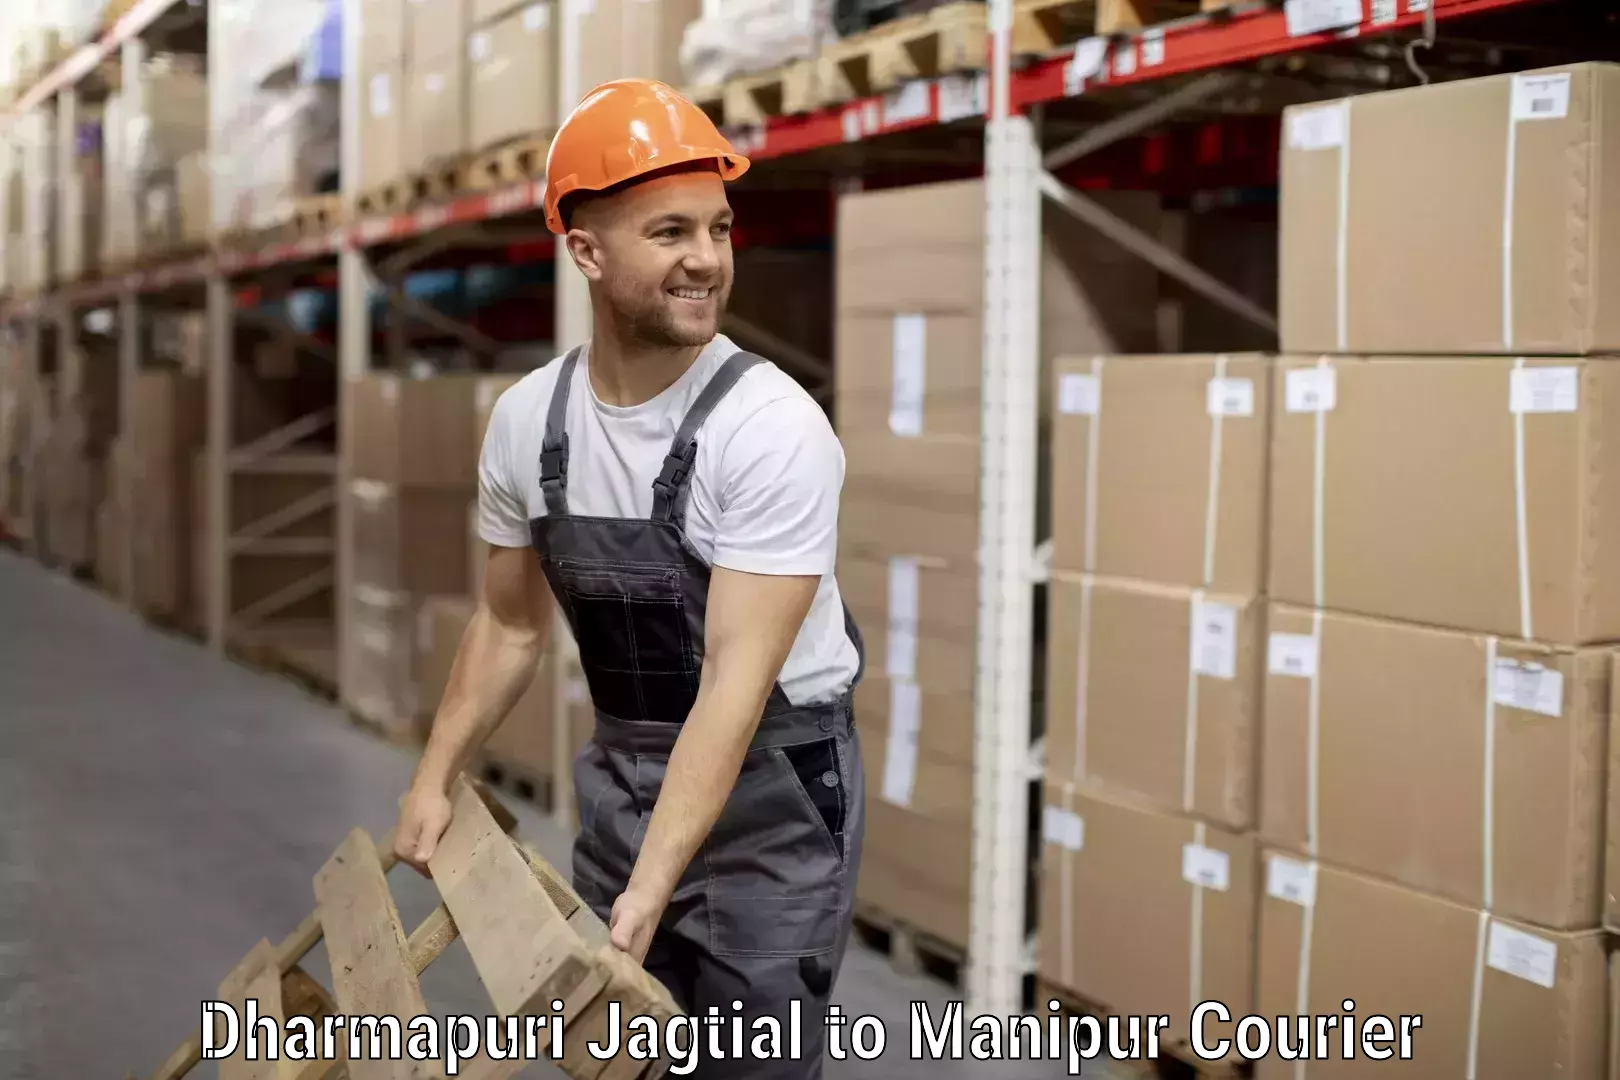 Baggage delivery estimate Dharmapuri Jagtial to Manipur